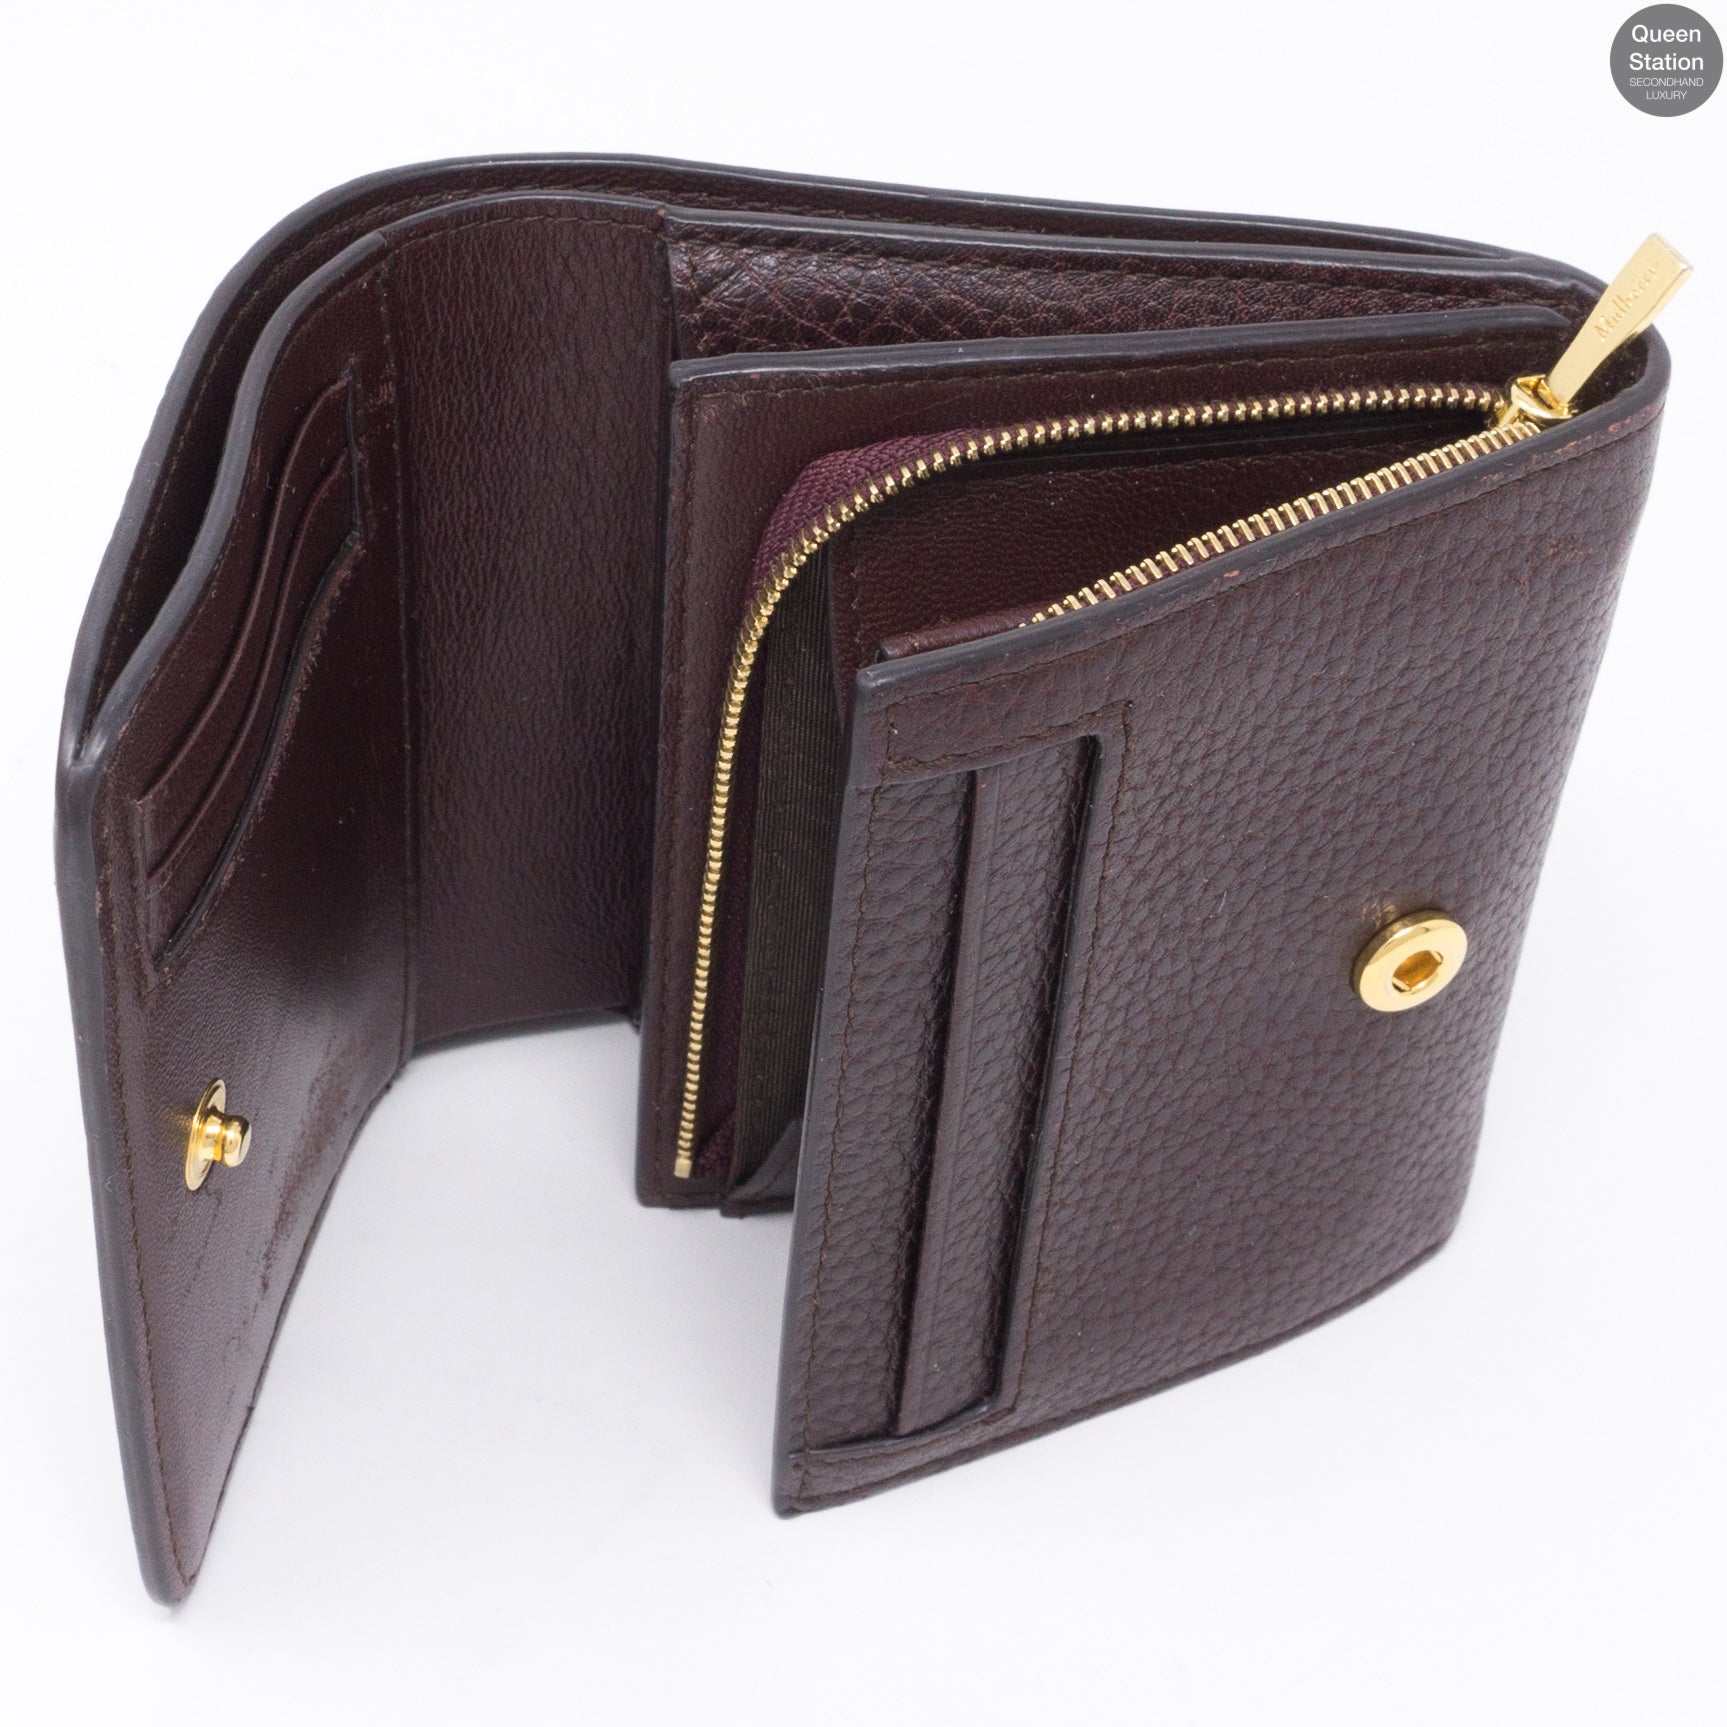 KATE SPADE Mulberry Street Small Malea Wallet Black Leather Bifold WLRU3075  | eBay